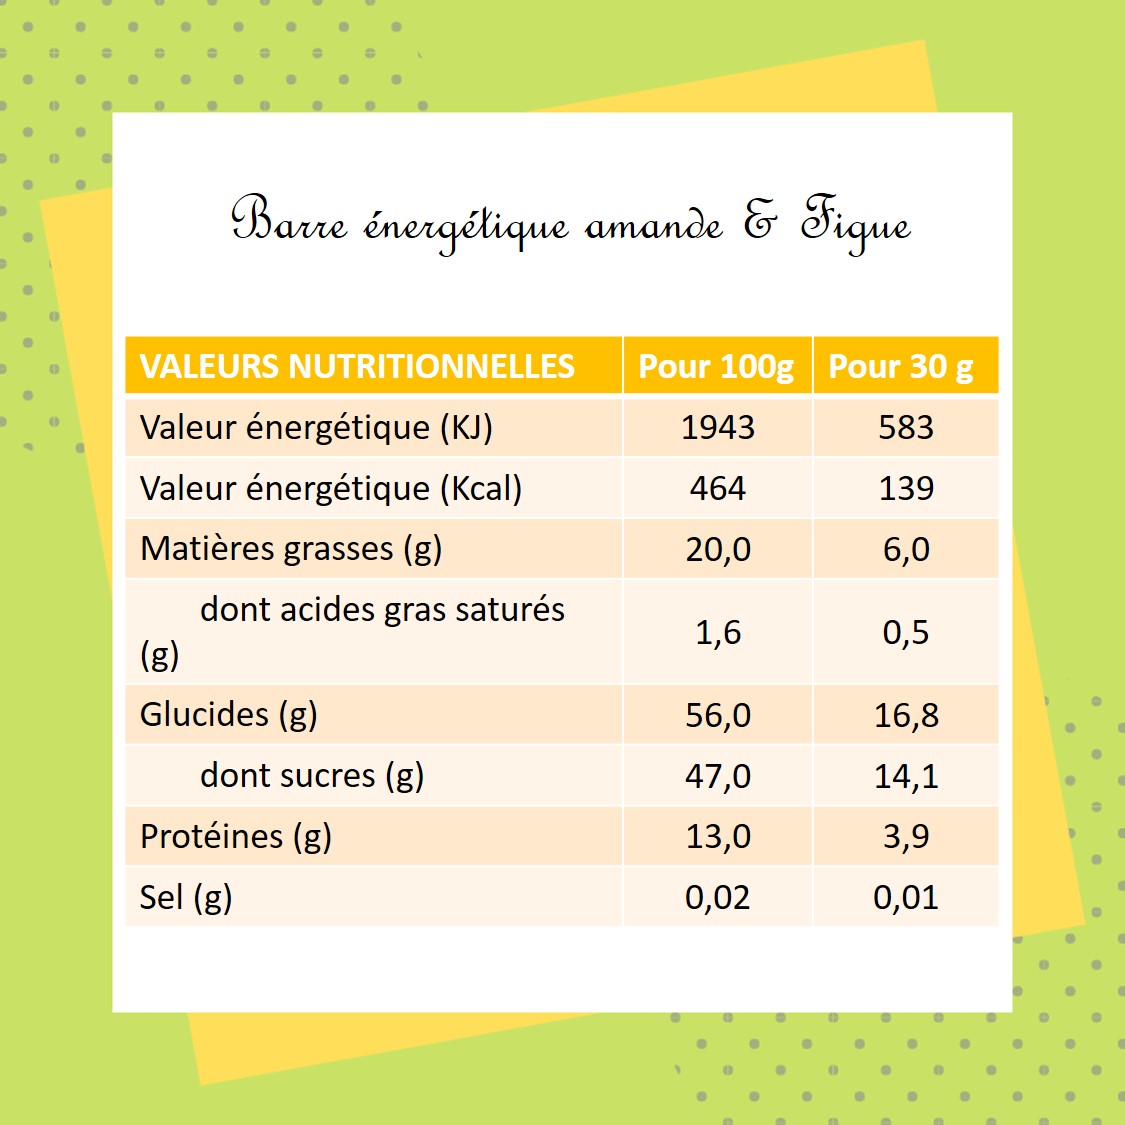 Figue : calories et composition nutritionnelle